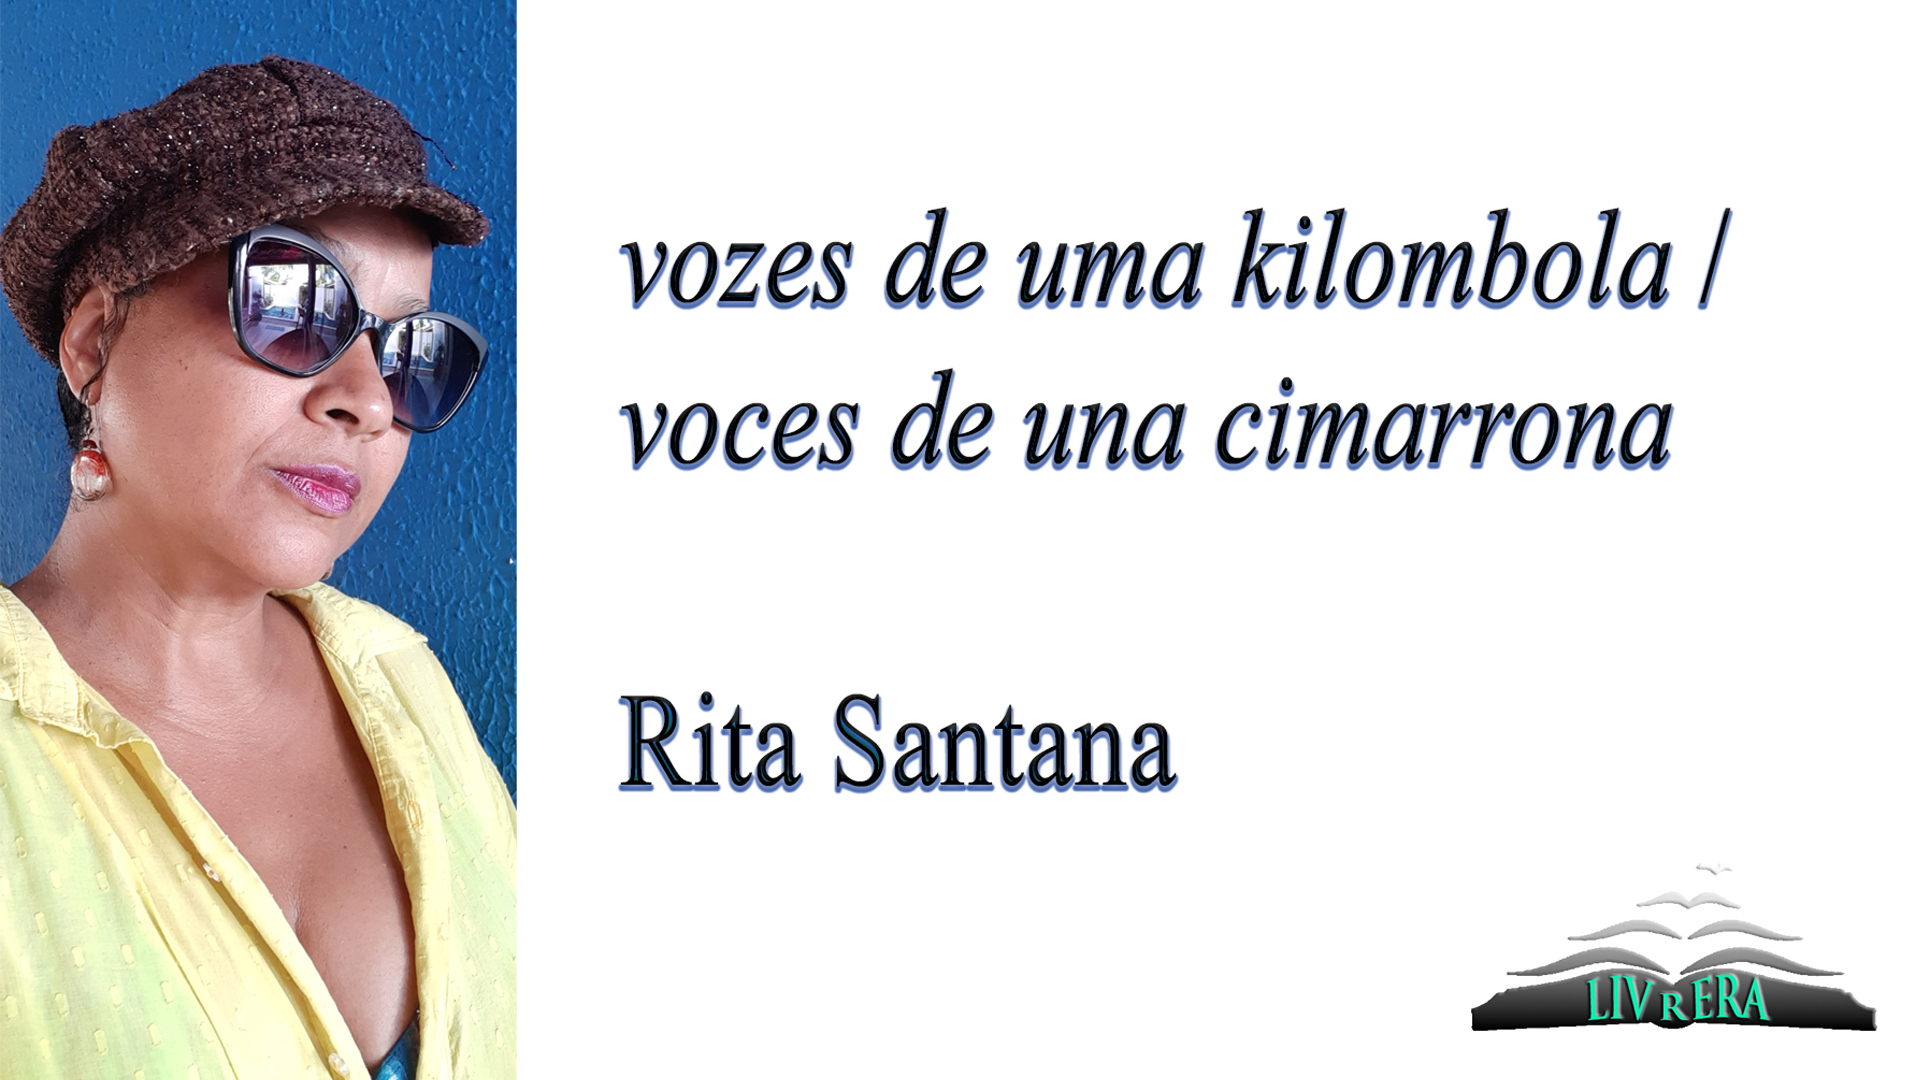 Rita Santana